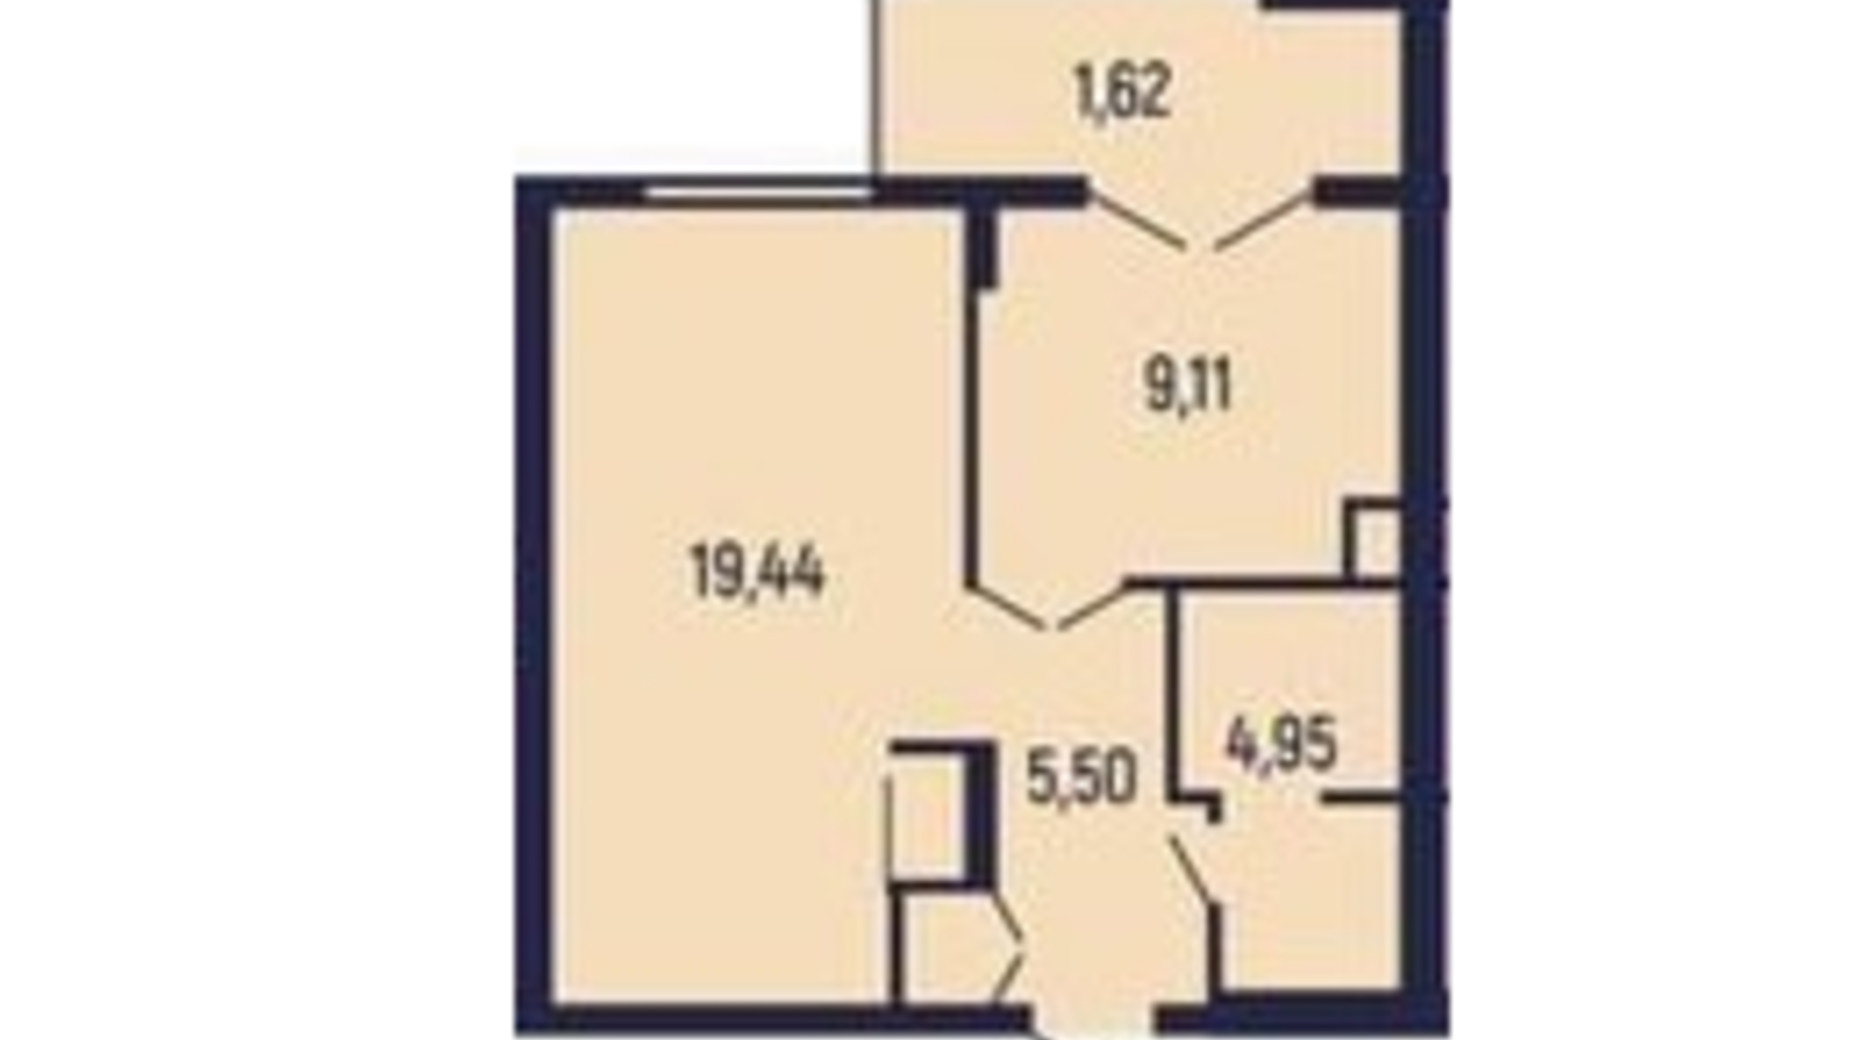 Планування 1-кімнатної квартири в Квартал Royal Town 40.62 м², фото 602062